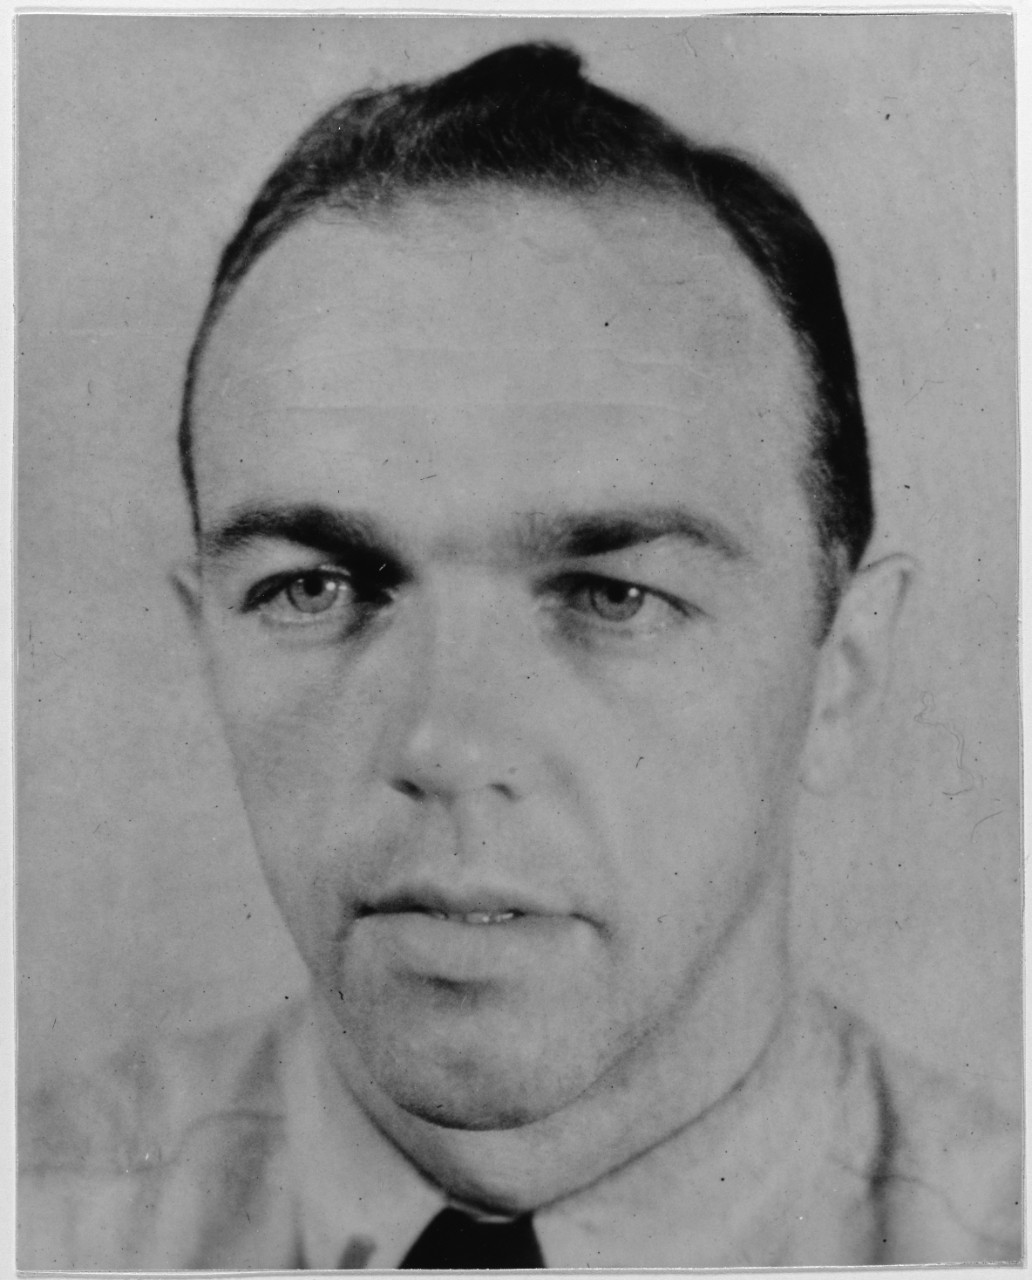 Ensign Frank Greenwood, USNR, August 28, 1941. 